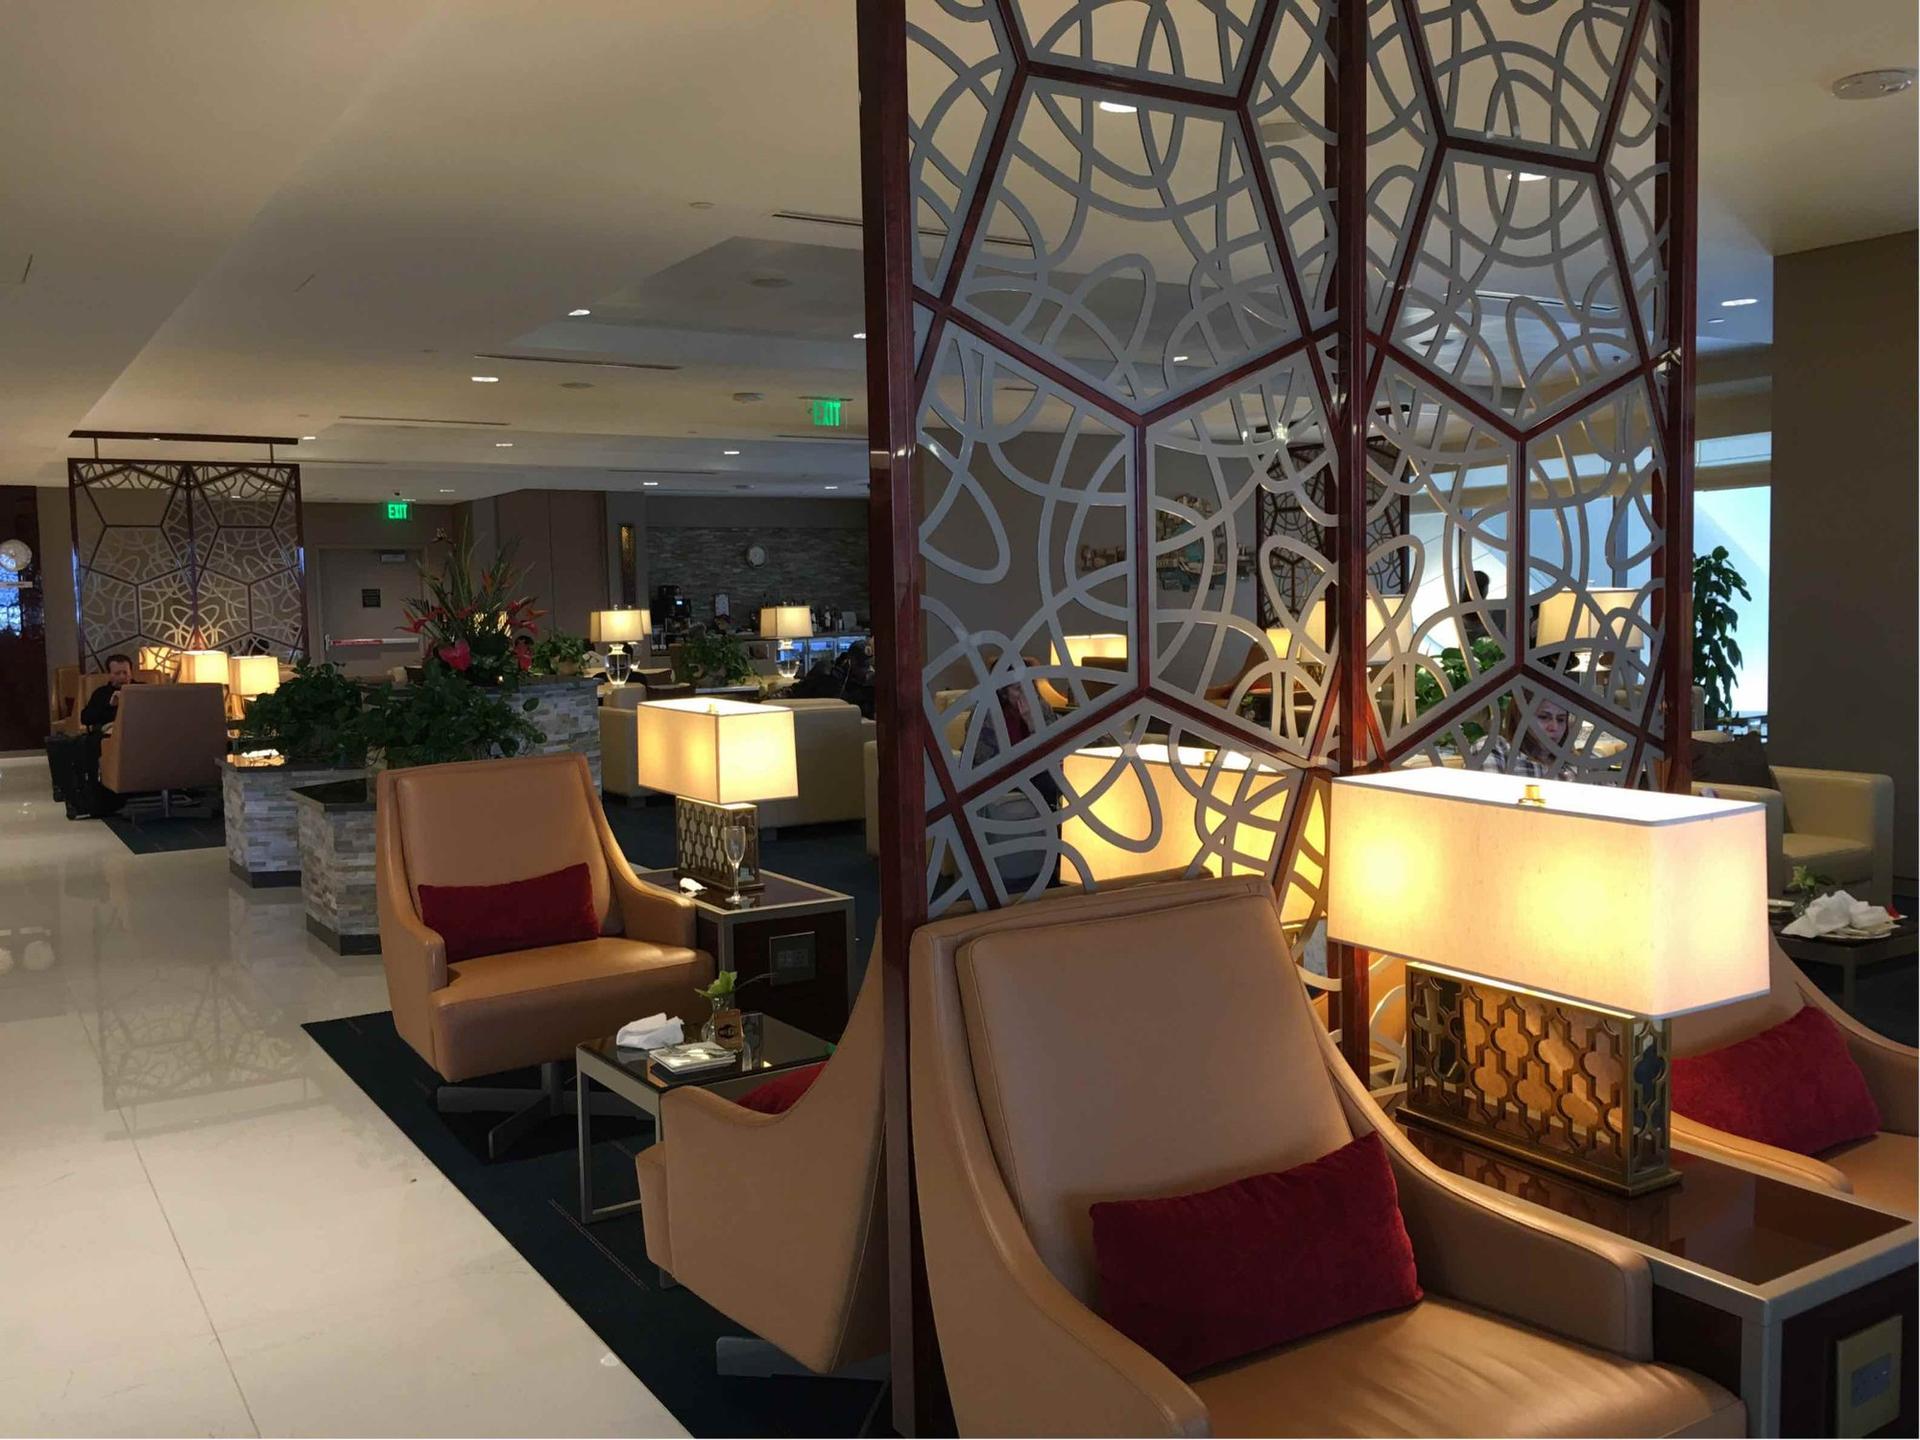 The Emirates Lounge image 9 of 12